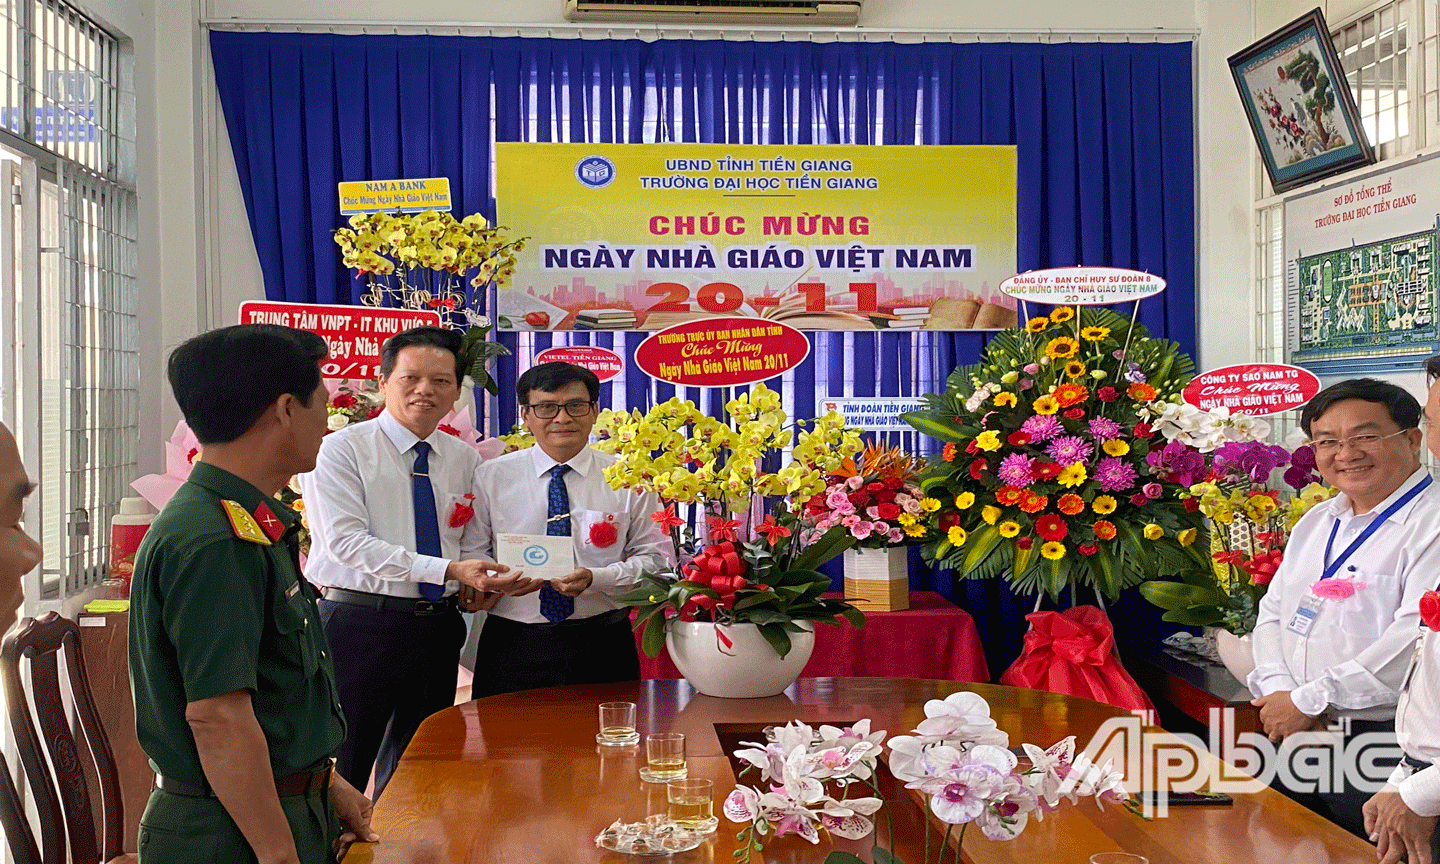 Phó Chủ tịch UBND tỉnh Nguyễn Thành Diệu chúc mừng các cán bộ, nhà giáo Trường Đại học Tiền Giang nhân kỷ niệm 41 năm Ngày nhà giáo Việt Nam. 